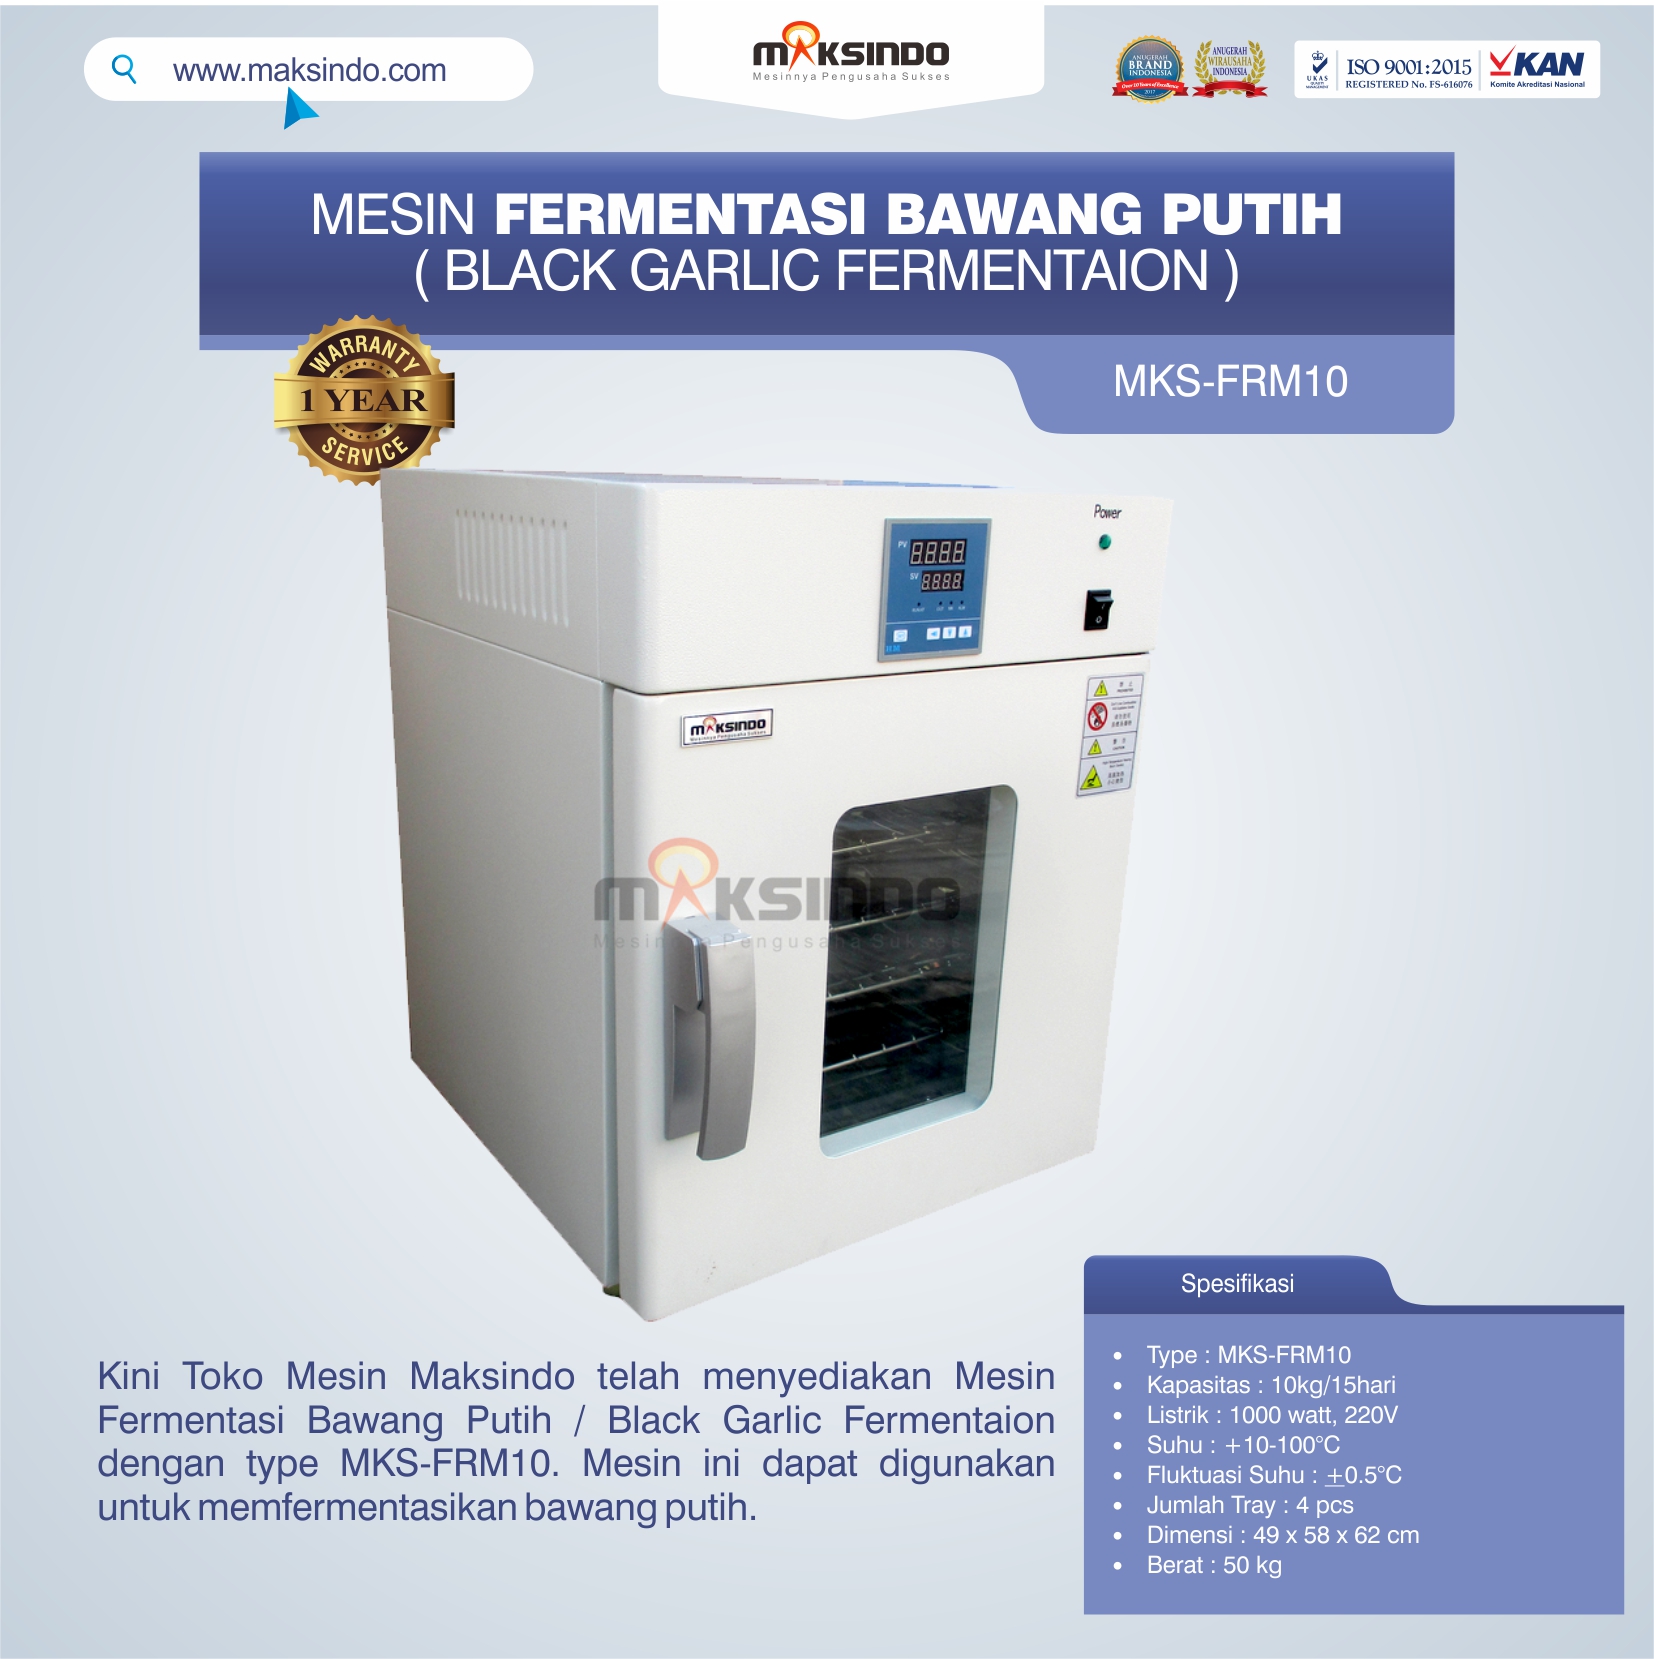 Mesin Fermentasi Bawang Putih / Black Garlic Fermentaion MKS-FRM10